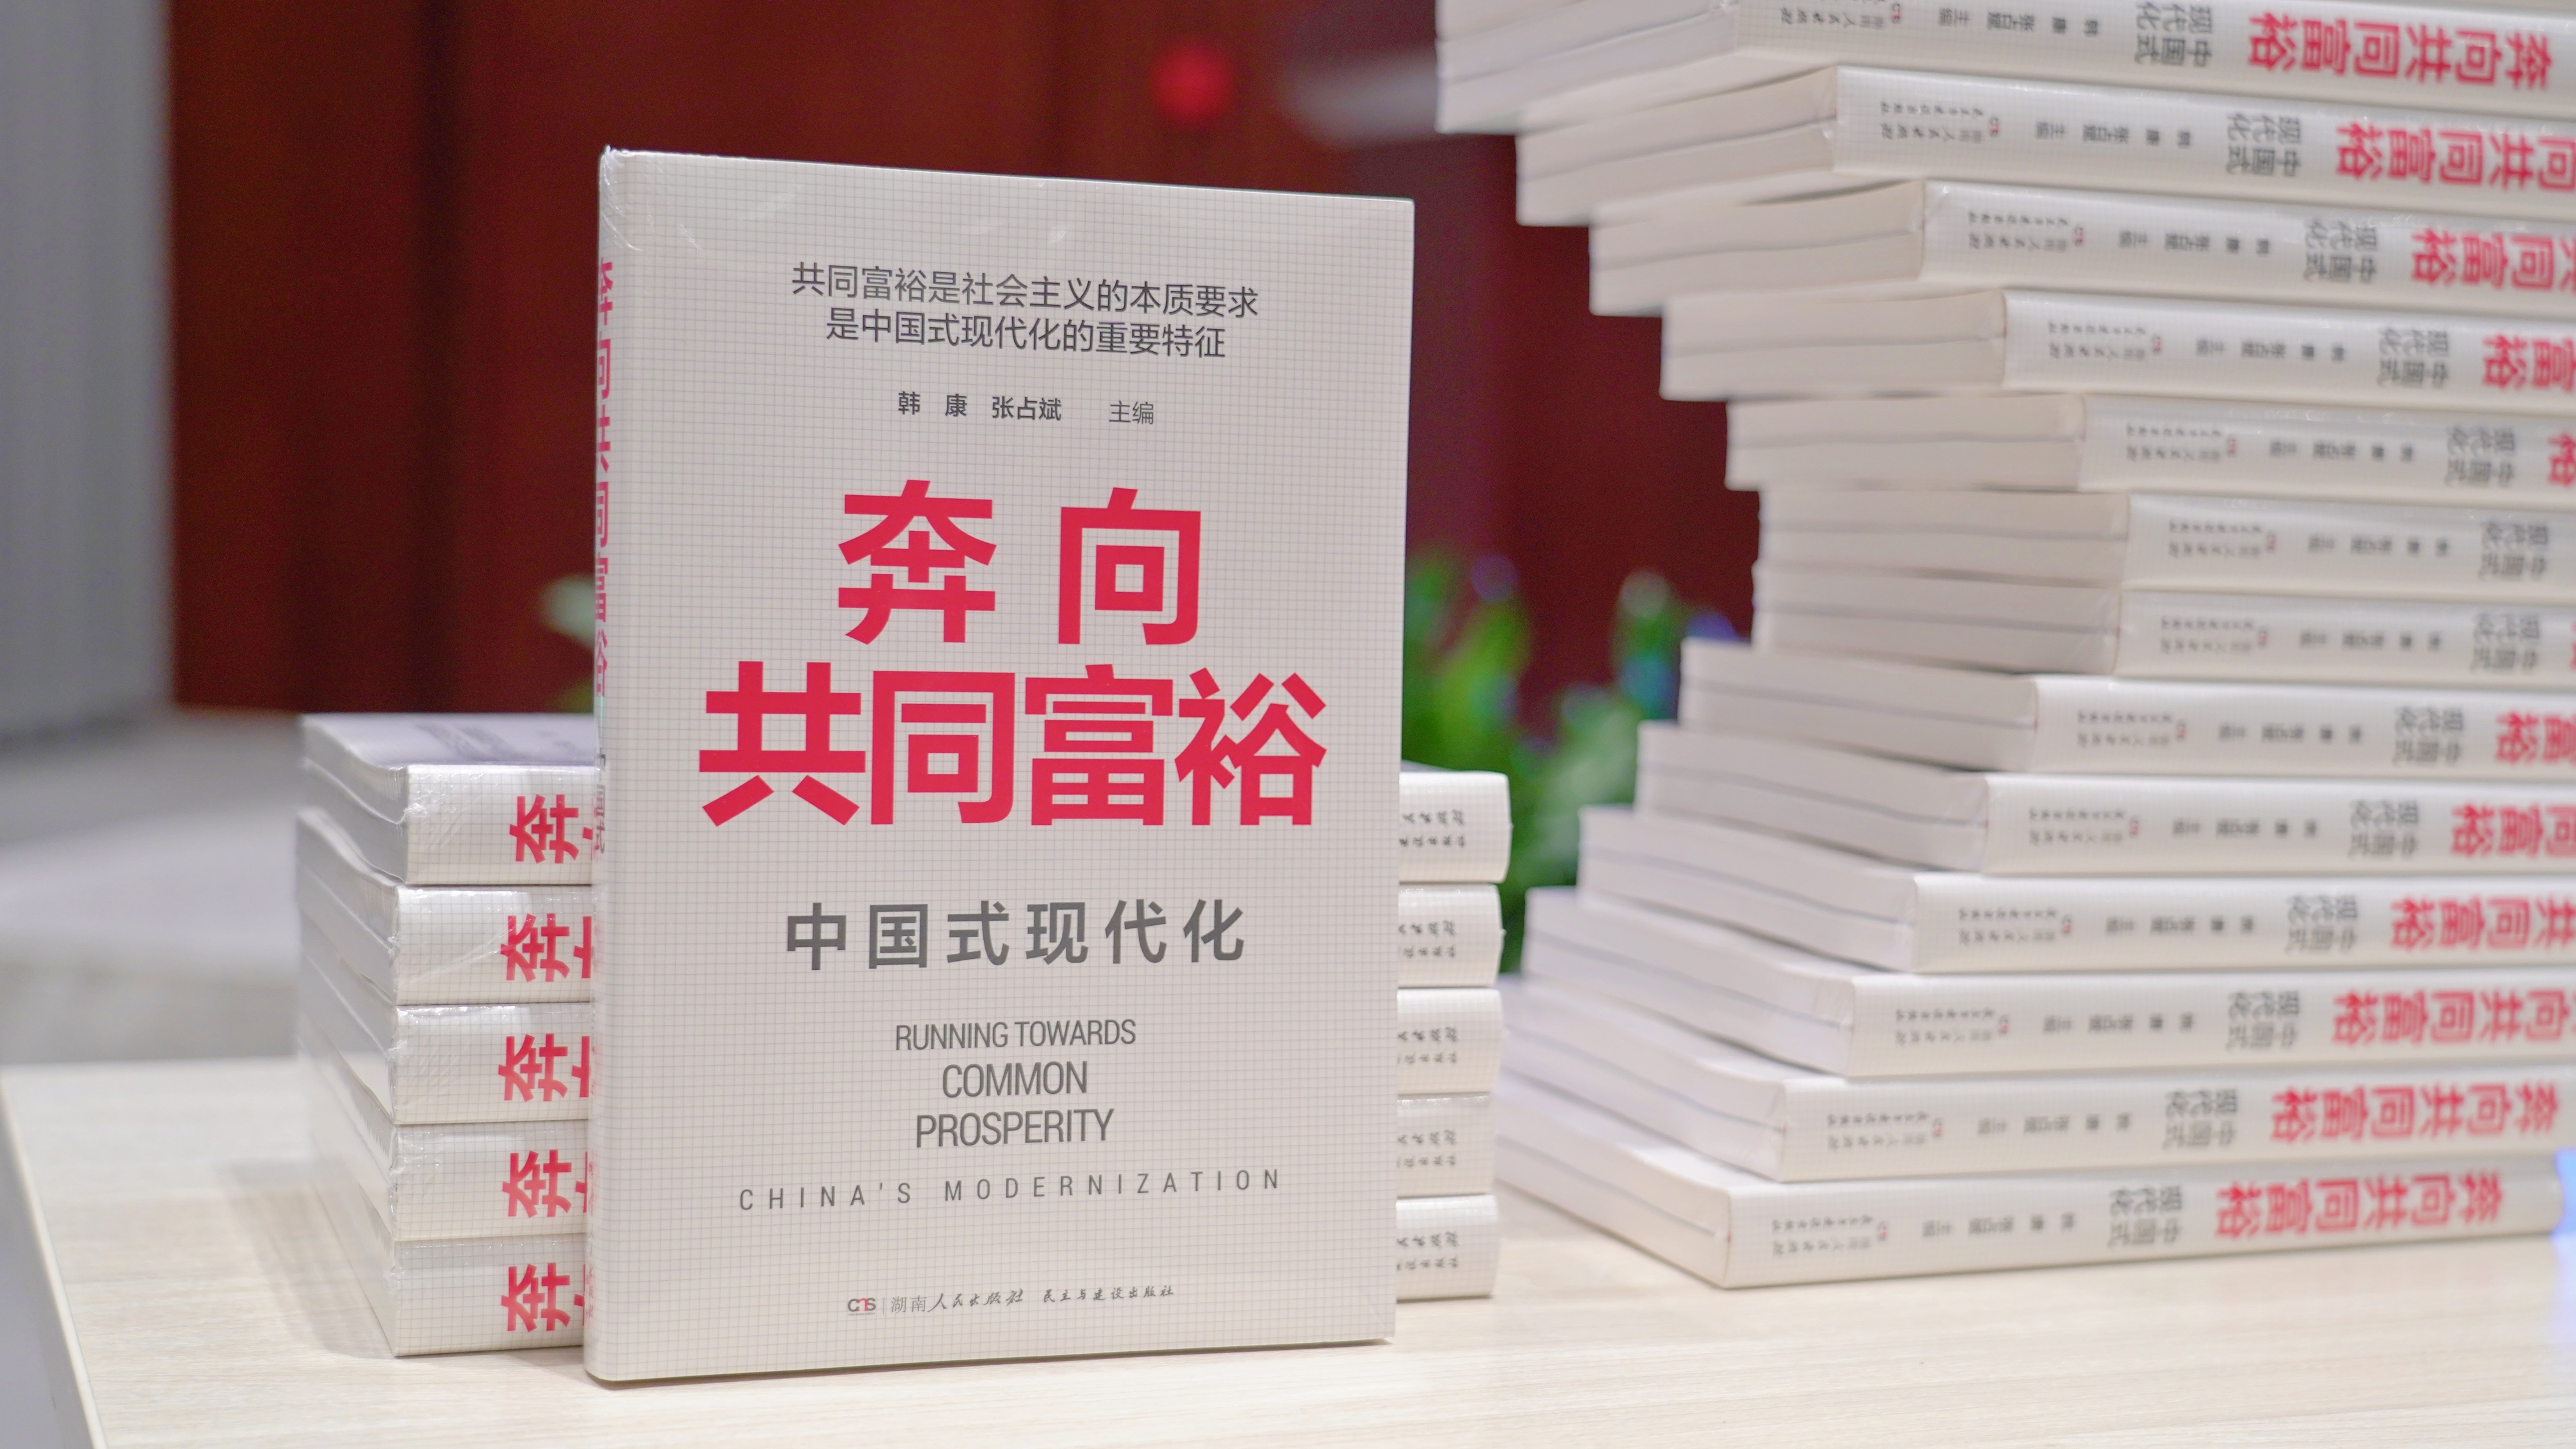 如何理解中国式现代化？《奔向共同富裕》出版研讨会举办